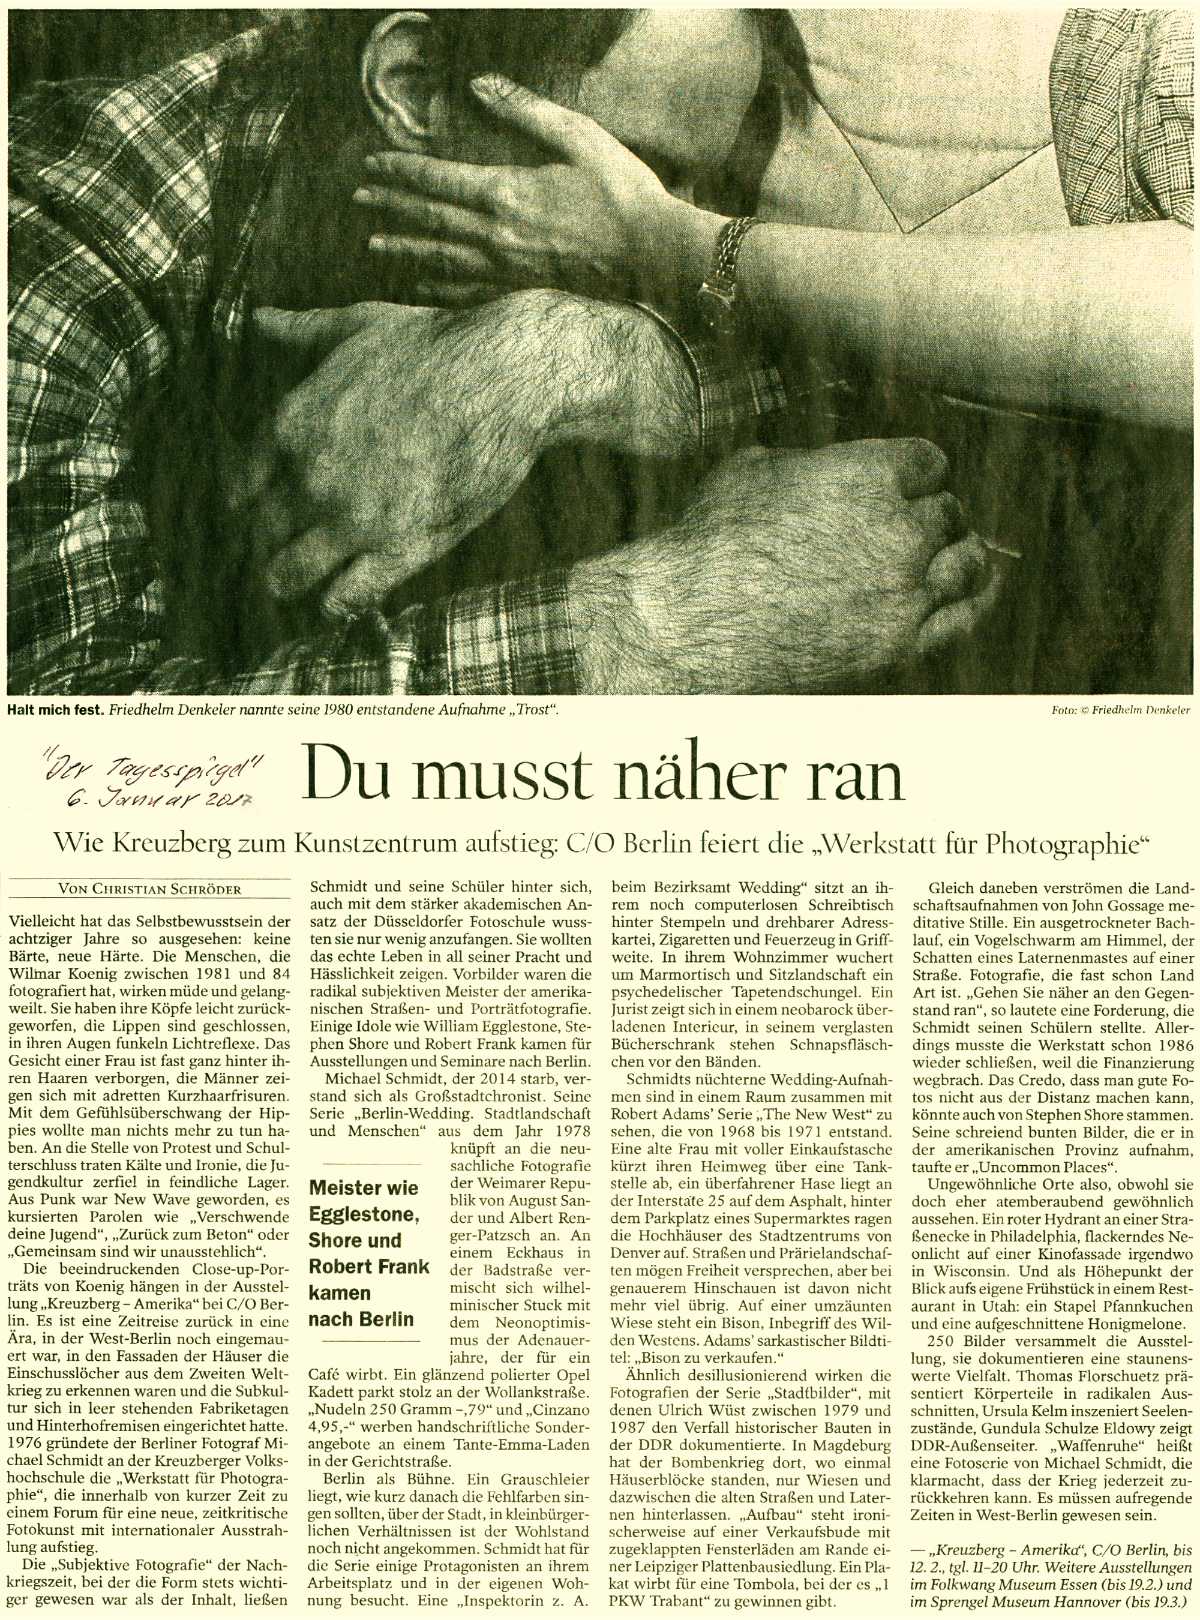 Zur Ausstellung »Werkstatt für Photograhie 1976-1986« bei C/O Berlin: Artikel im TAGESSPIEGEL, 6. Januar 2017